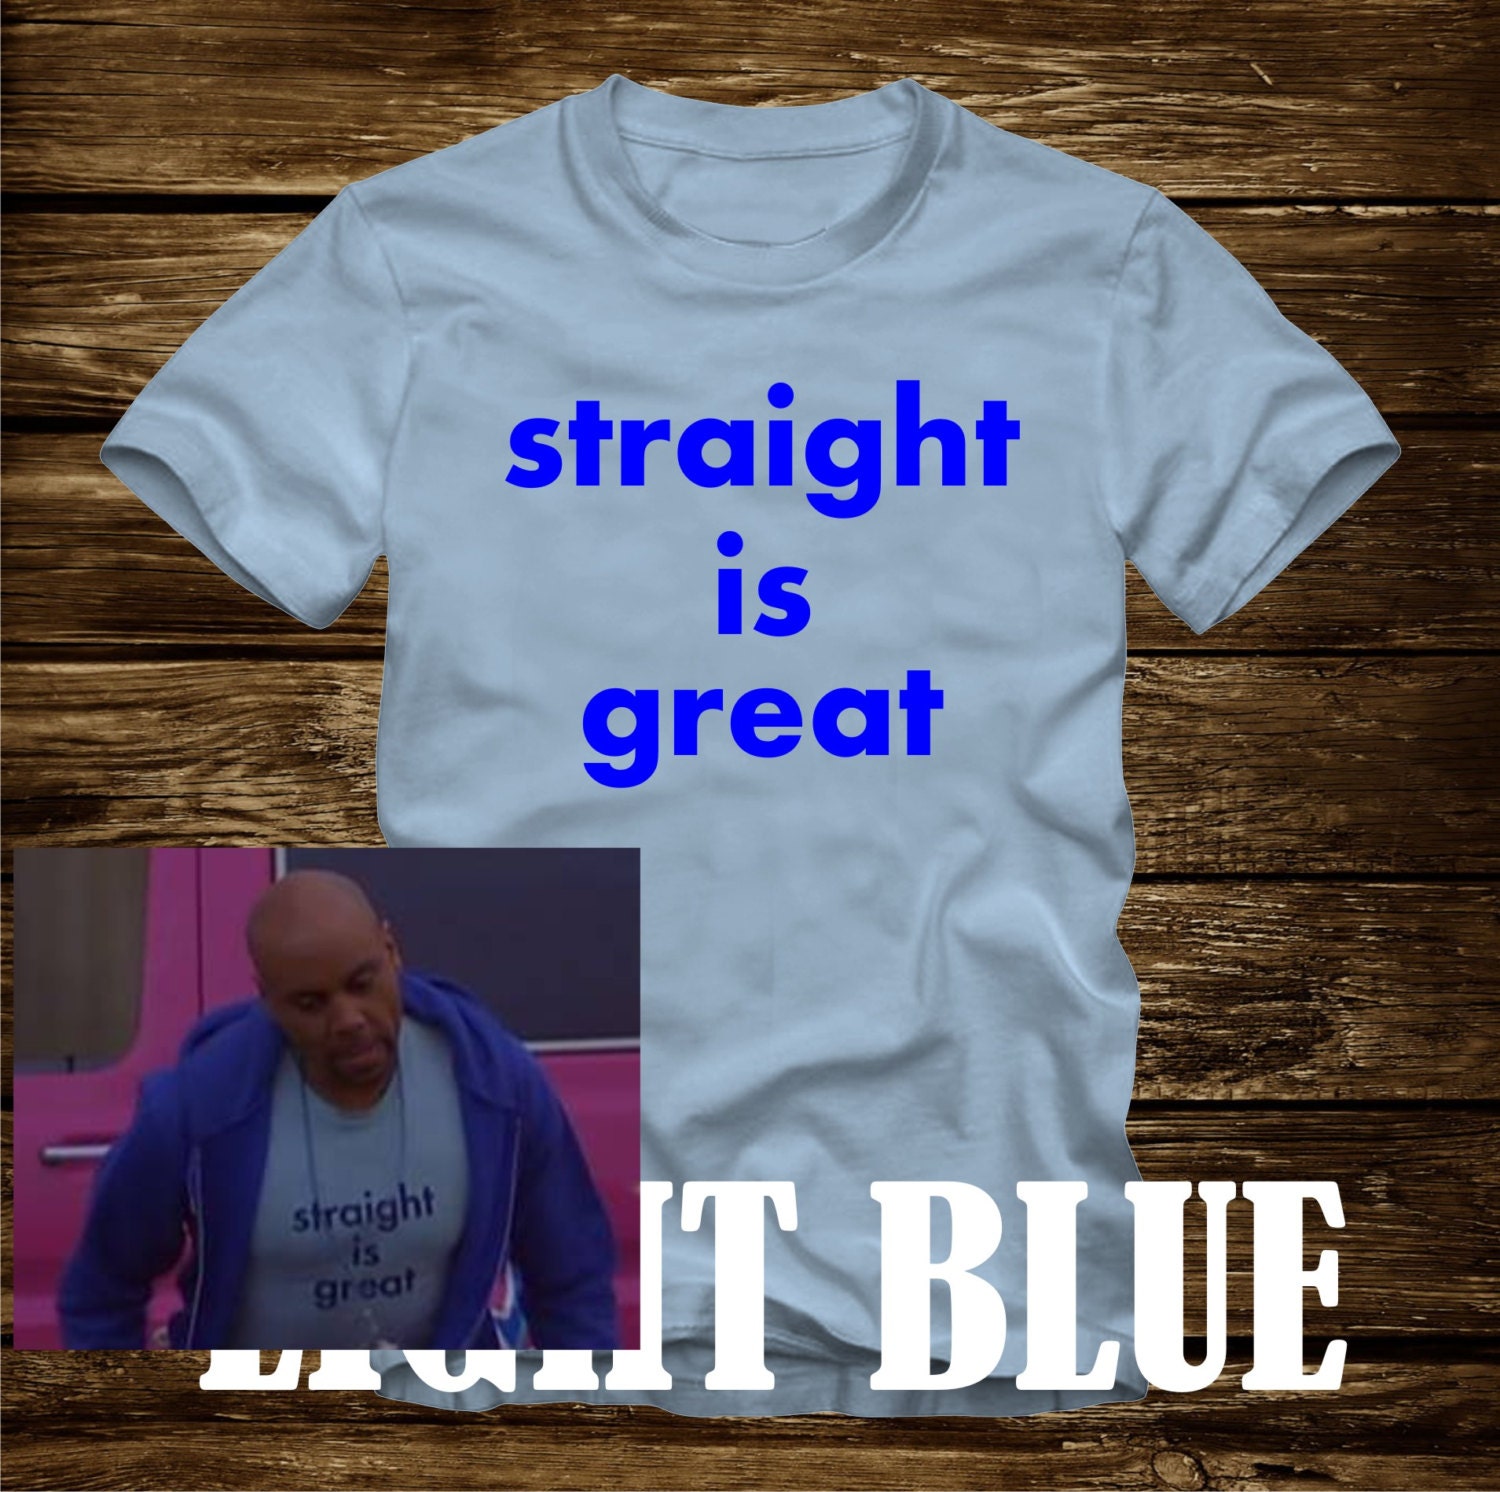 tee shirt blue